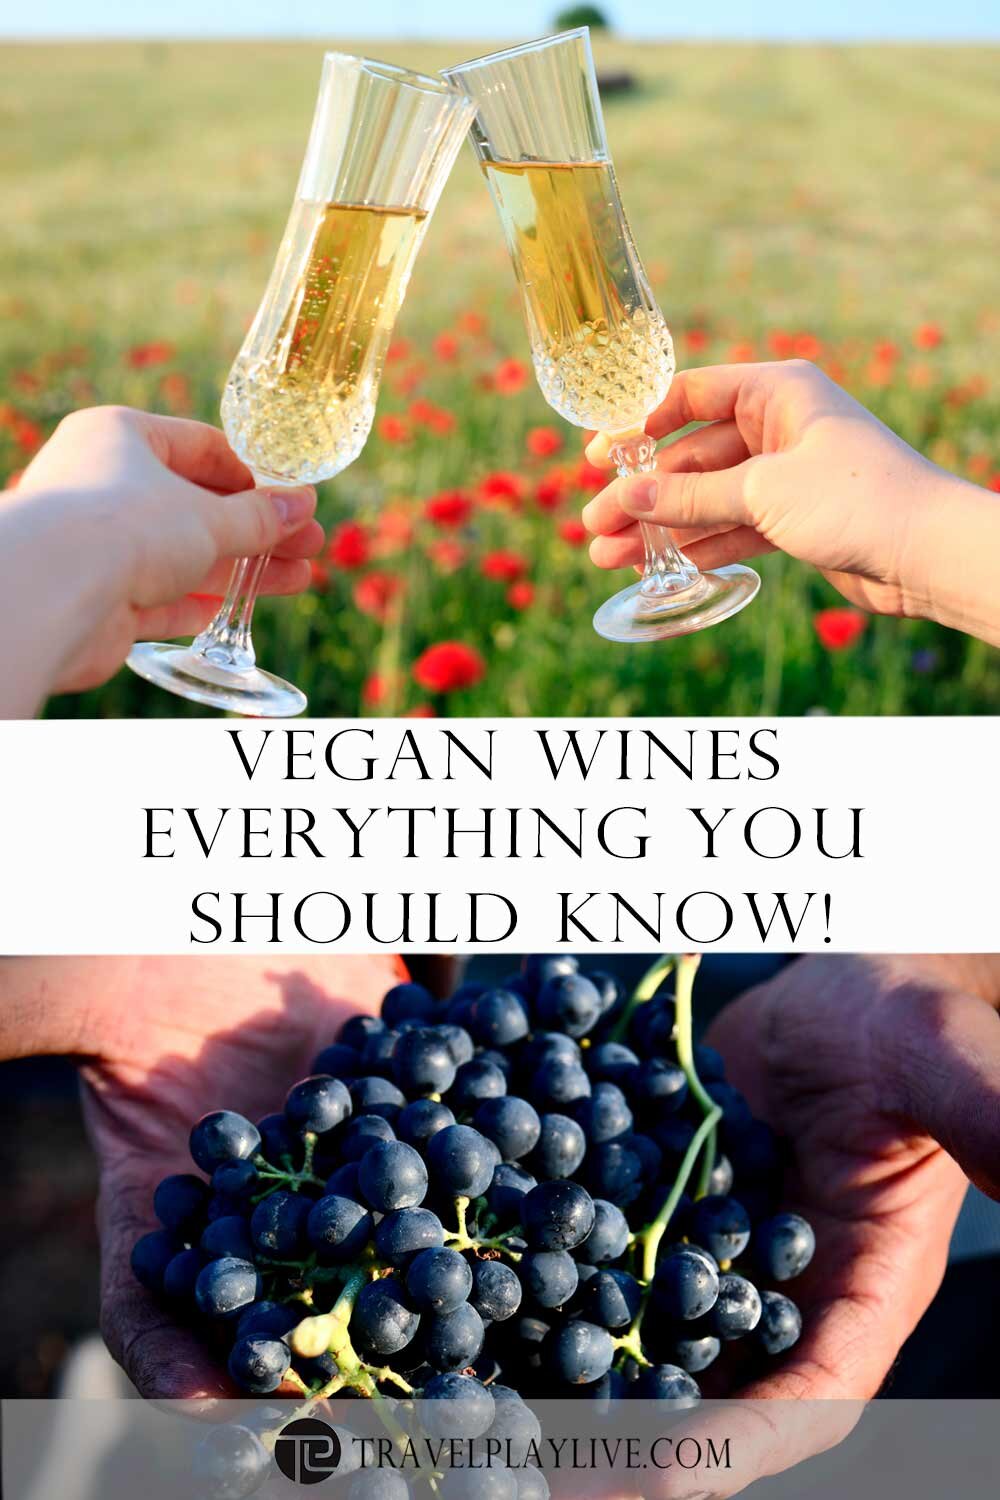 Vegan-wines1.jpg